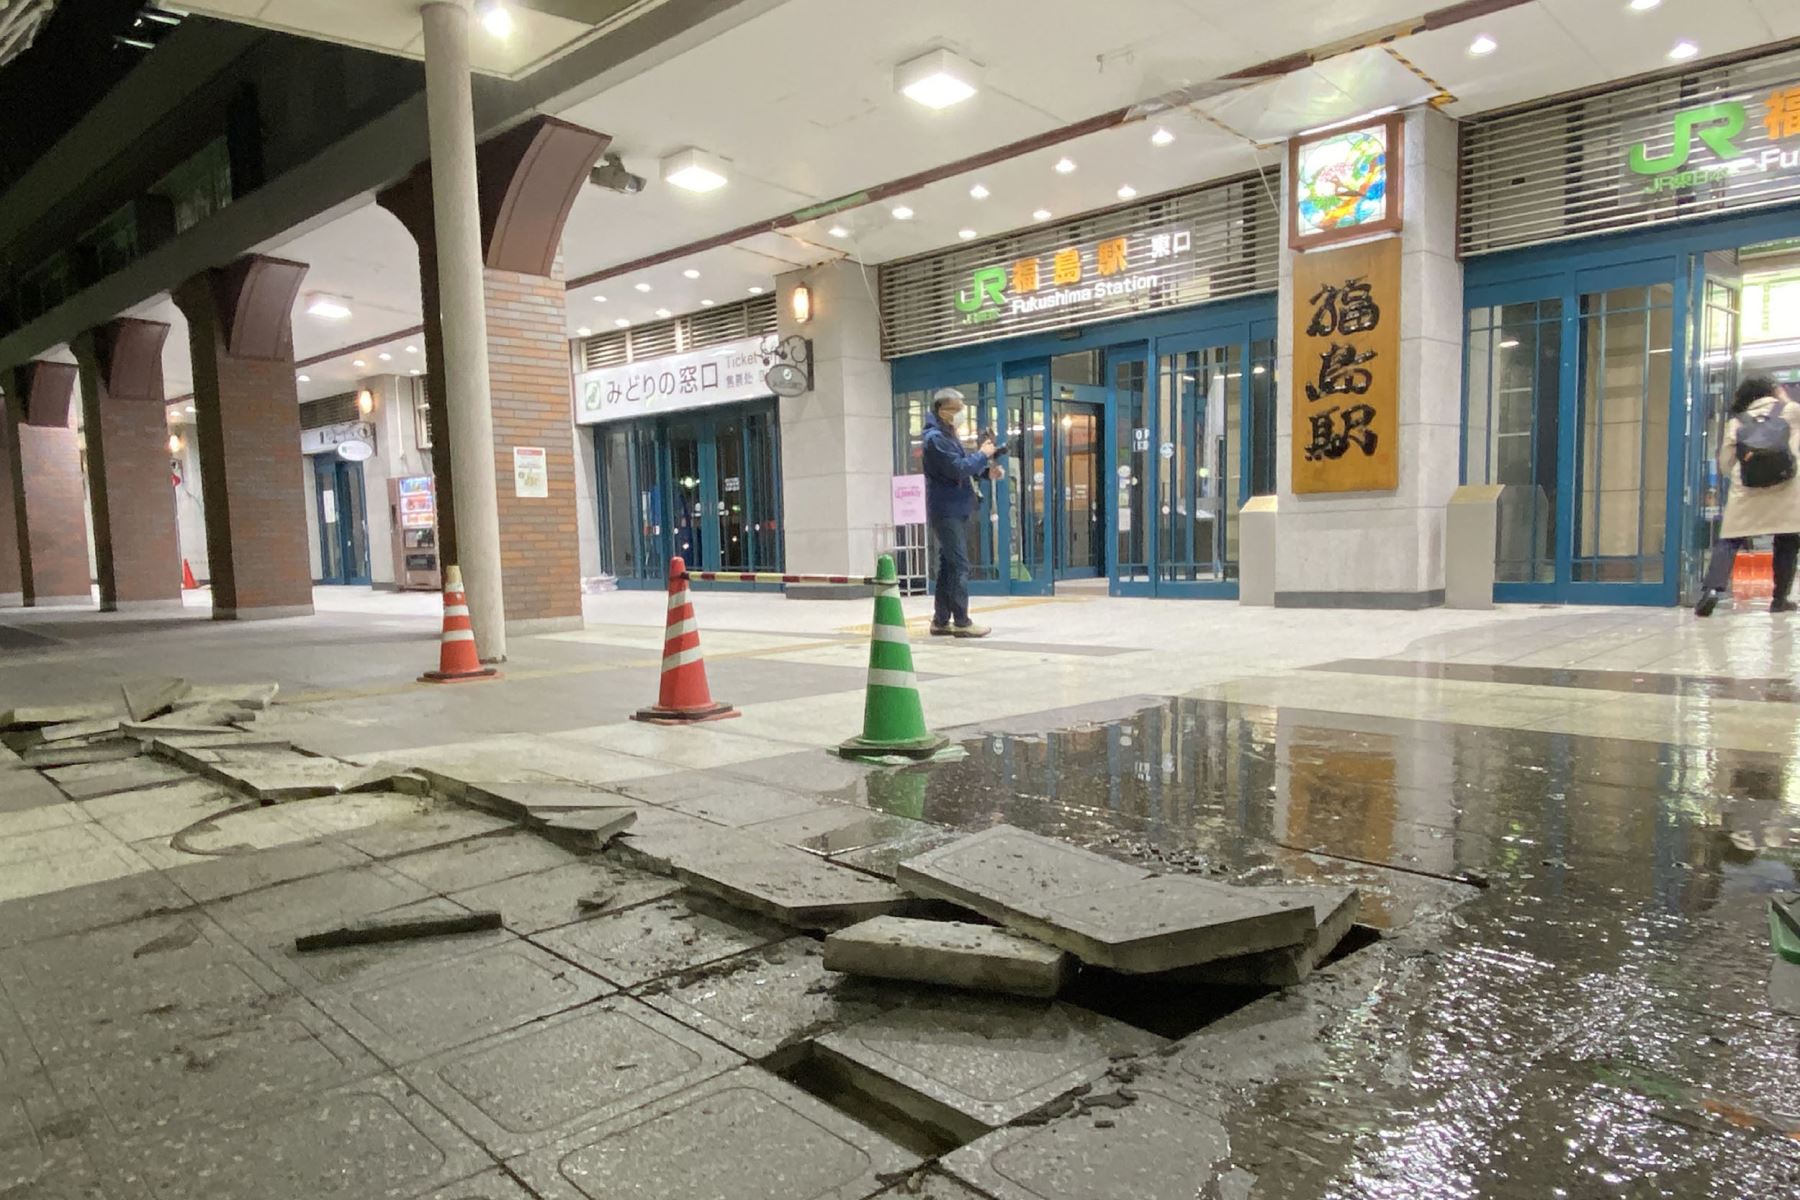 Una imagen muestra bloques de pavimento dañados en el suelo frente a la estación JR Fukushima, que parecen haberse agrietado debido al impacto del terremoto en Fukushima.
Foto: AFP